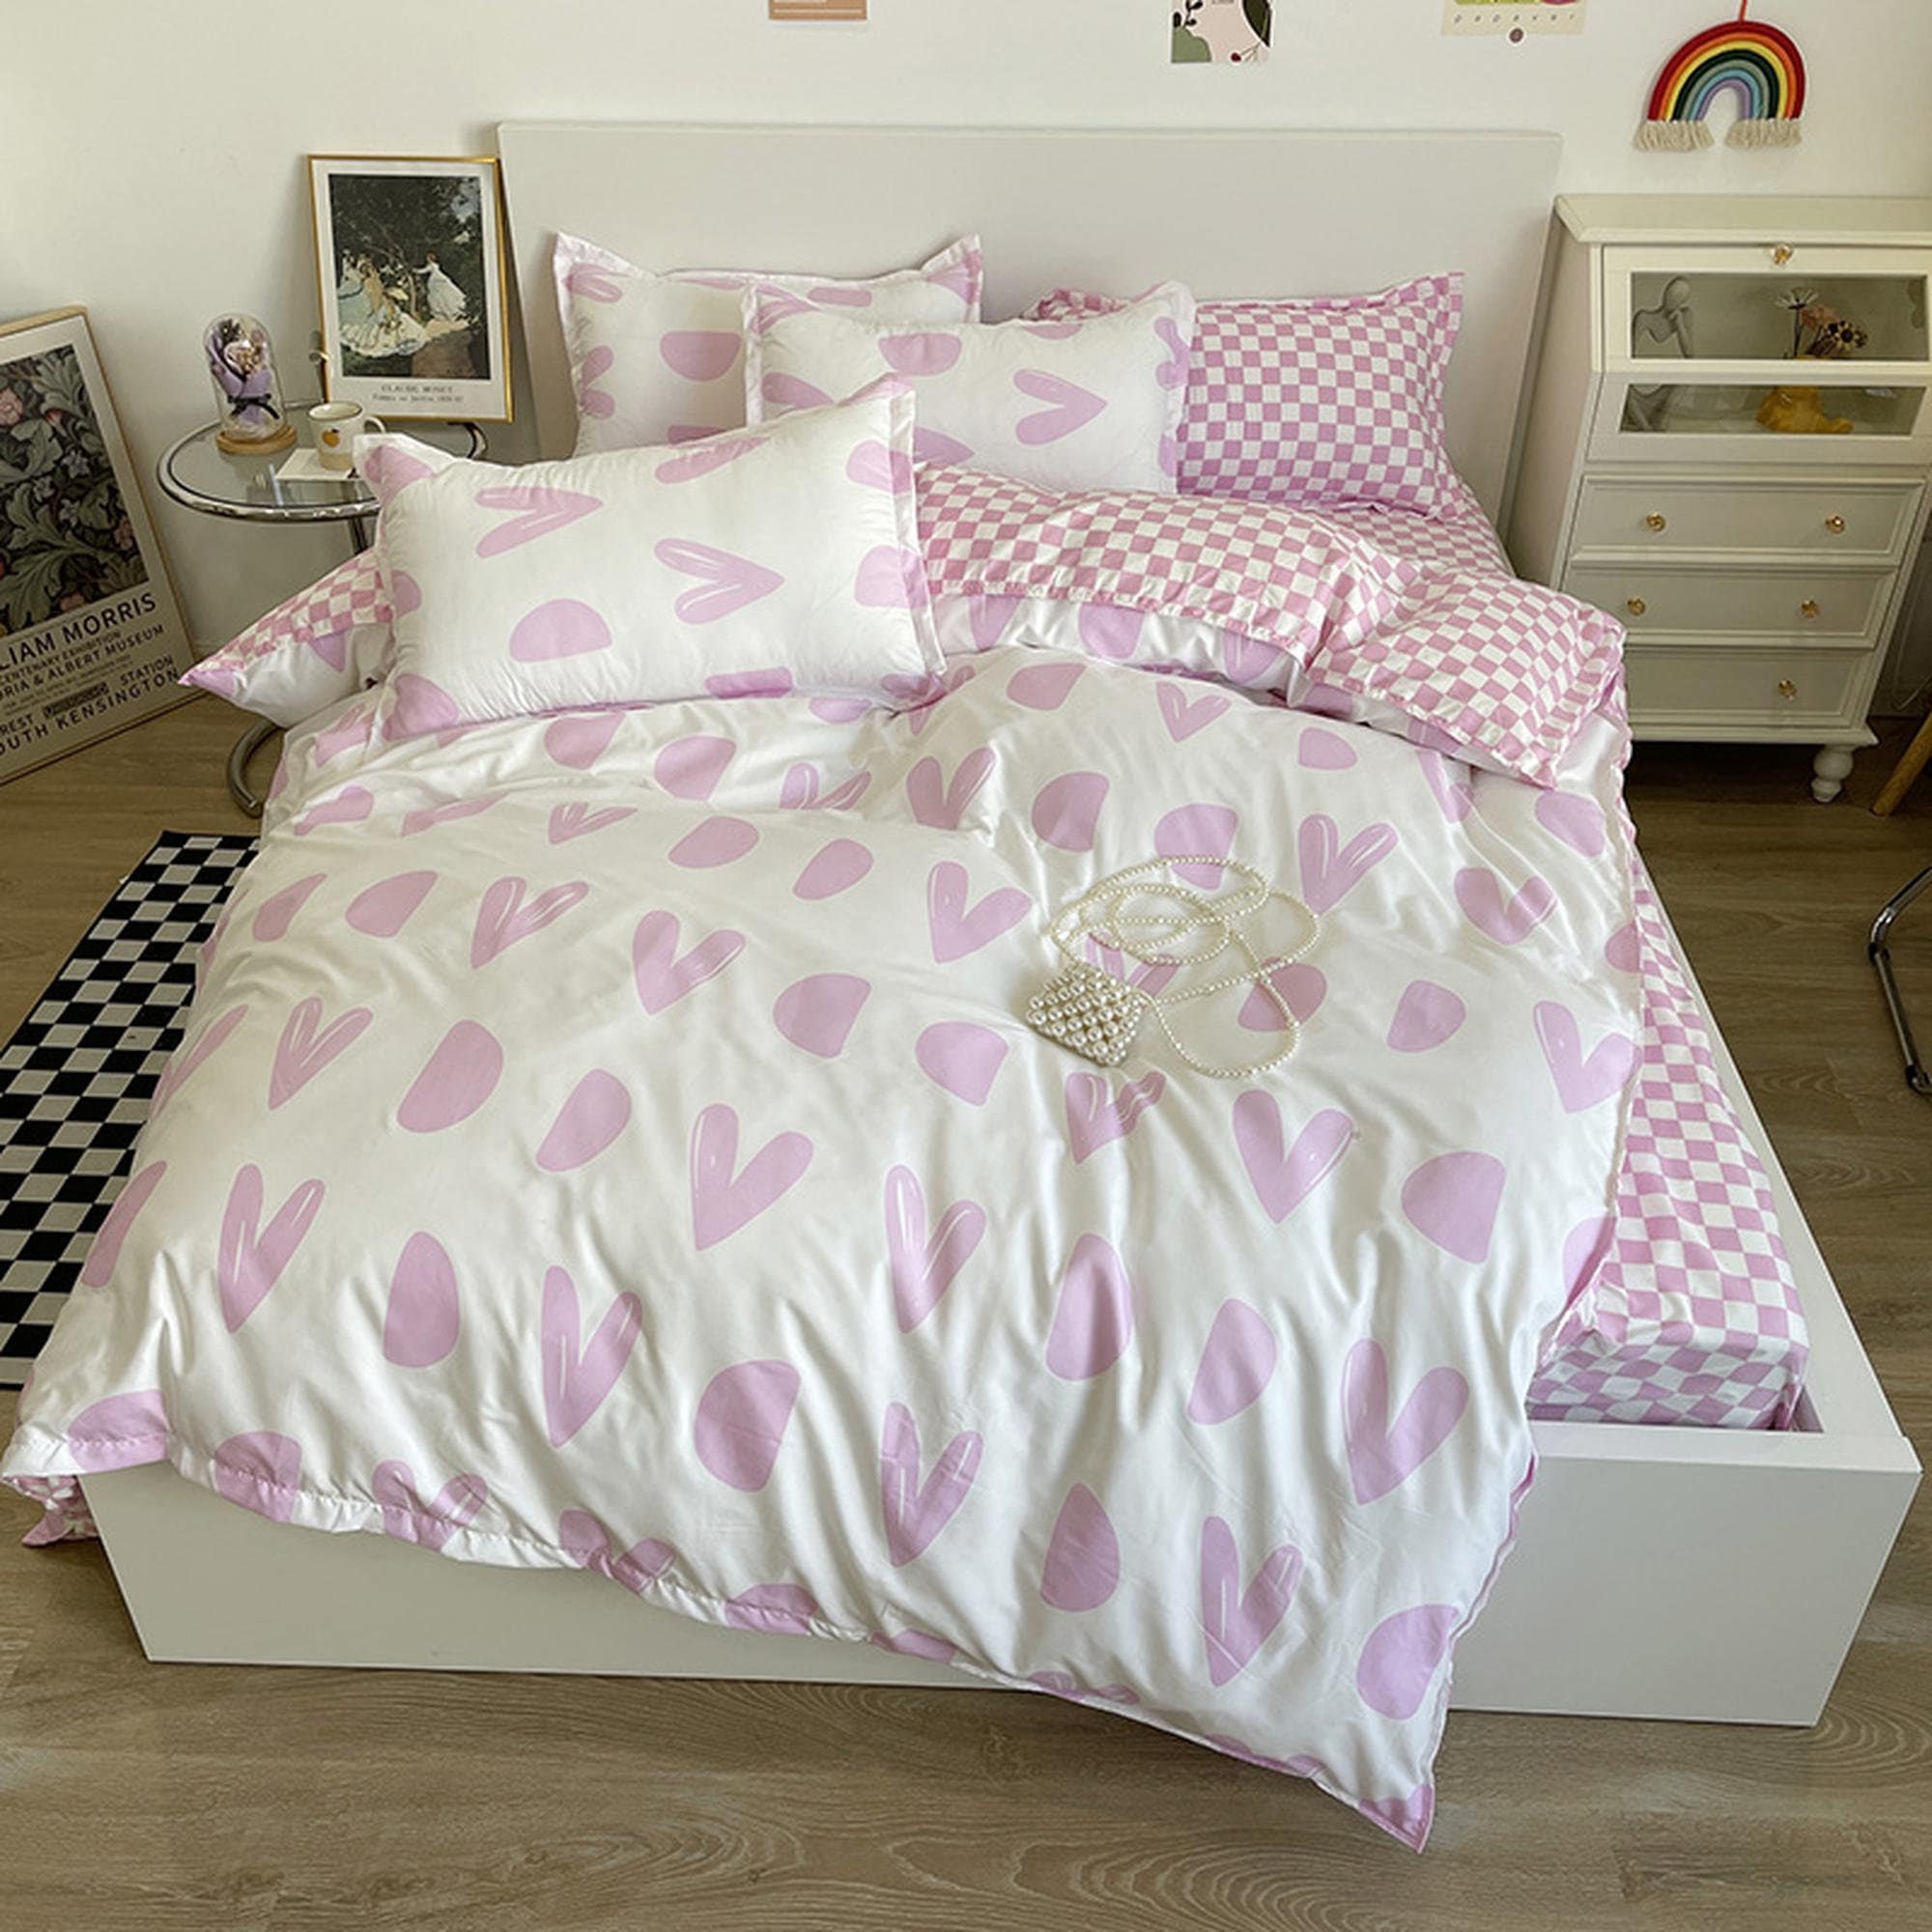 Cute Sage Green Bedding Set Gingham Checkered Bedsheet, Kawaii Dorm Be